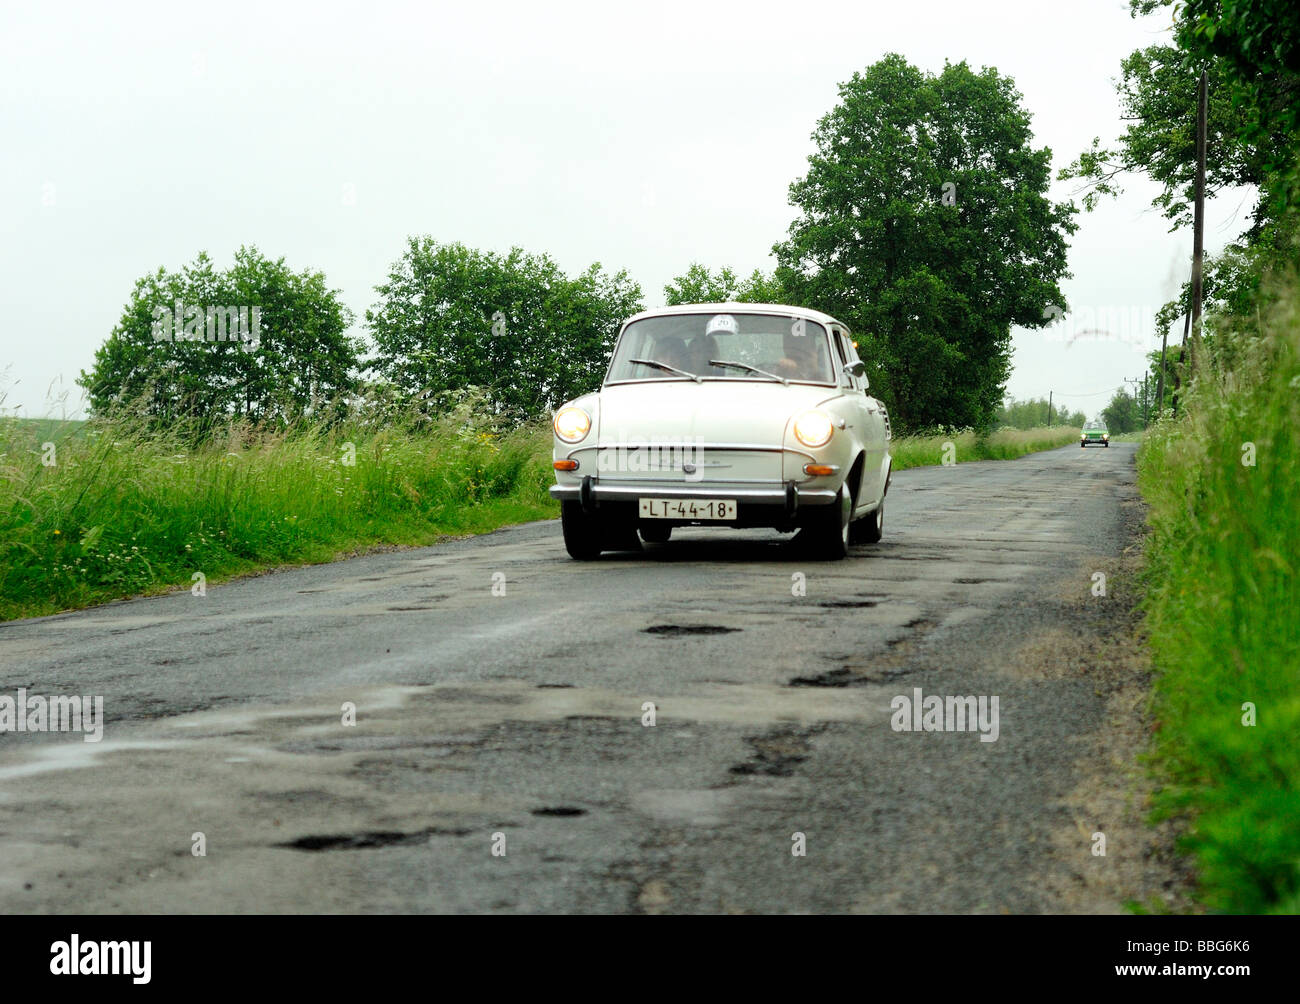 Skoda 1000 MB Vintage car on rural road Stock Photo